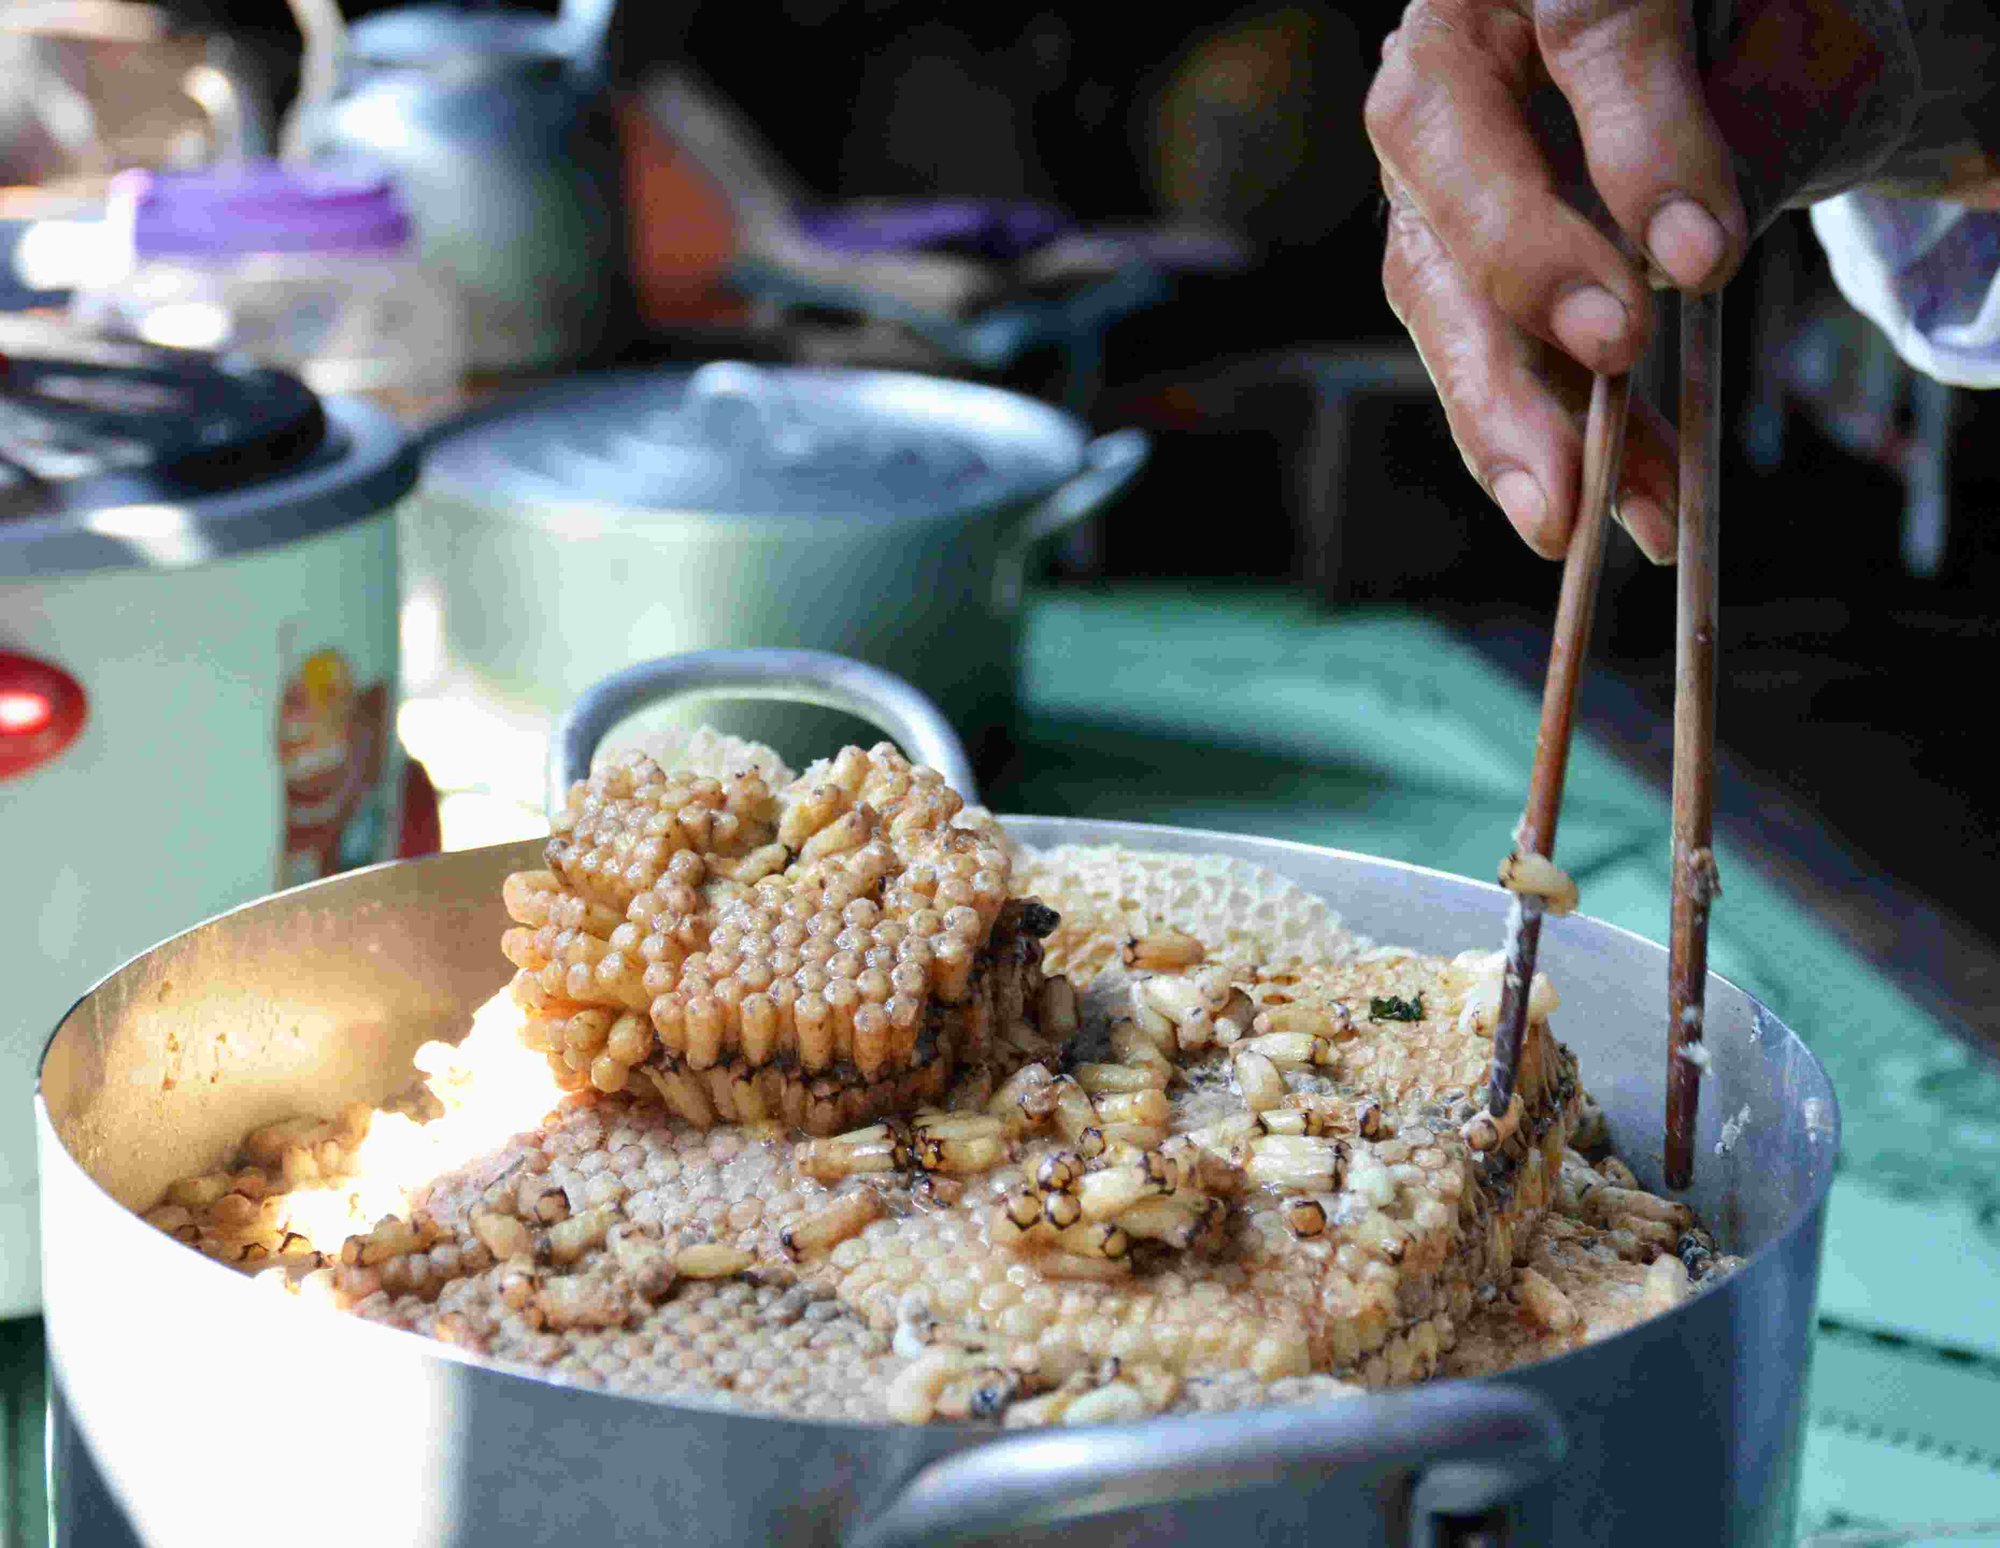 NHỘNG ONG RỪNG, MẬT NGỌT: Khám phá hình ảnh nhộng ong rừng và mật ngọt trên đất nước Việt Nam sẽ khiến bạn ngất ngây bởi sự tuyệt vời và độc đáo của chúng. Hãy tìm hiểu về sự quý giá của mật ong với sức khỏe của con người qua ảnh của nhộng ong rừng.